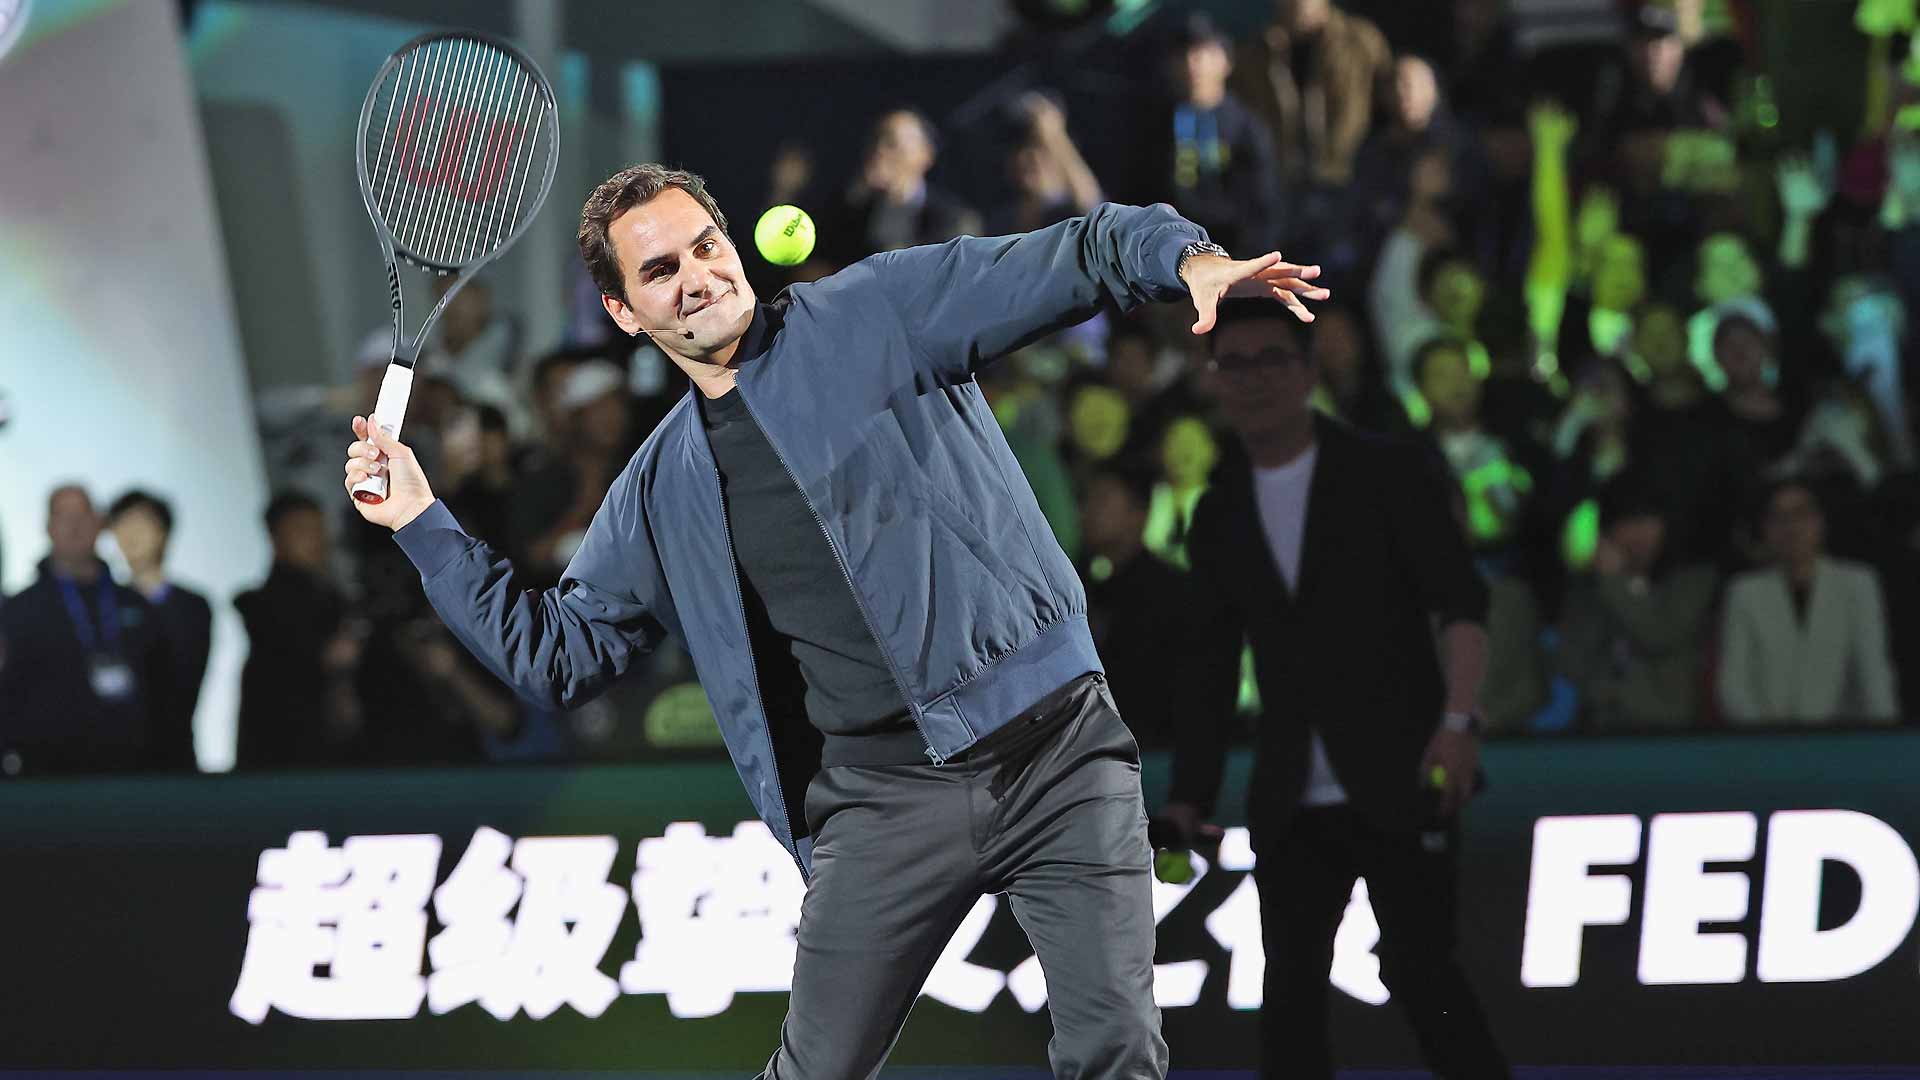 罗杰·费德勒在上海举行的颁奖典礼上获奖 ATP巡回赛